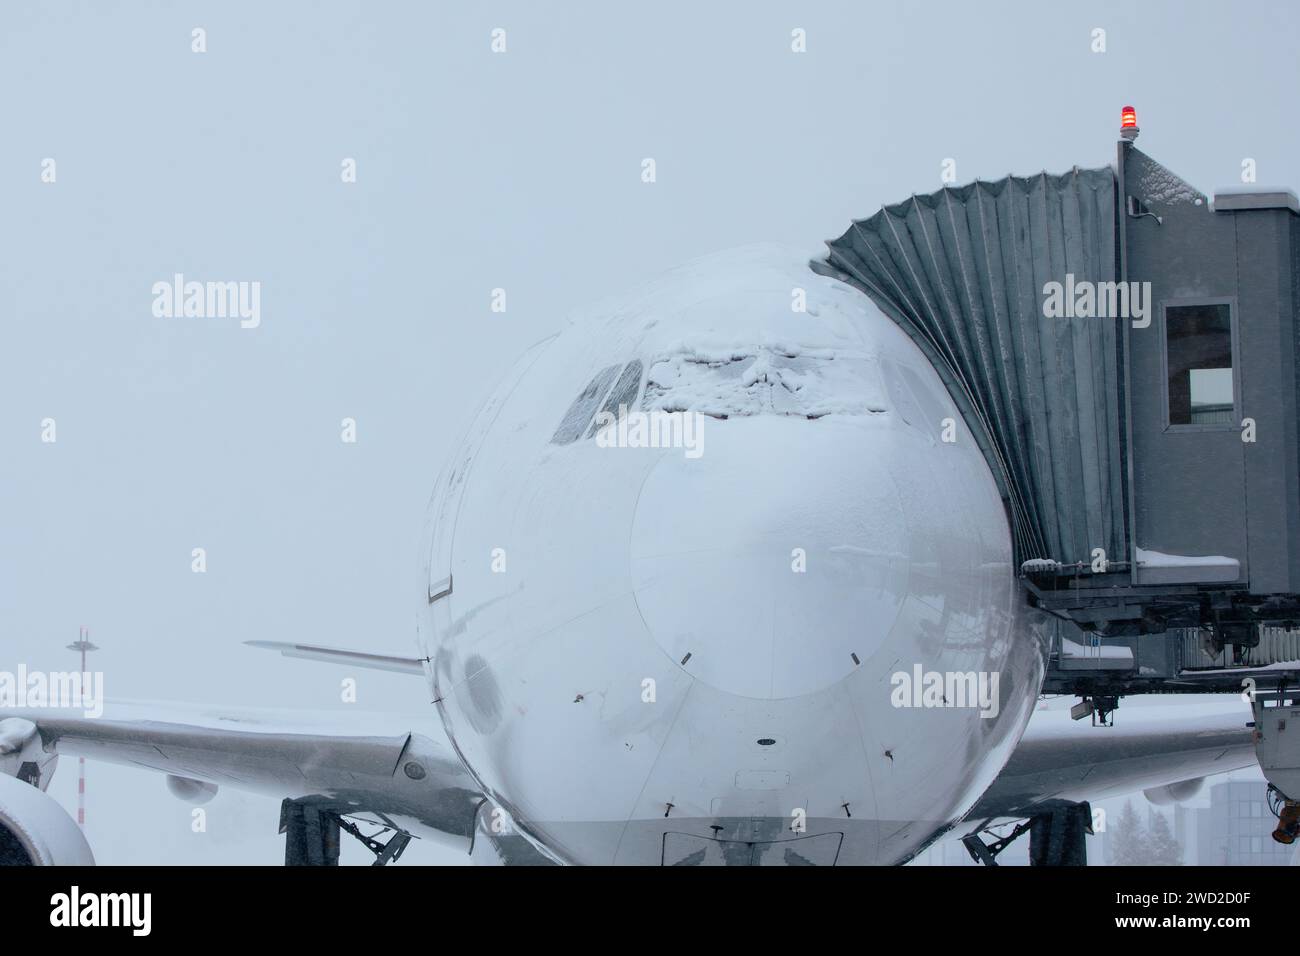 Der Flughafen ist bei starkem Schneefall geschlossen. Schneebedecktes Flugzeug an frostigen Wintertagen. Wetterextremen im Transport mit Kopierraum. Stockfoto